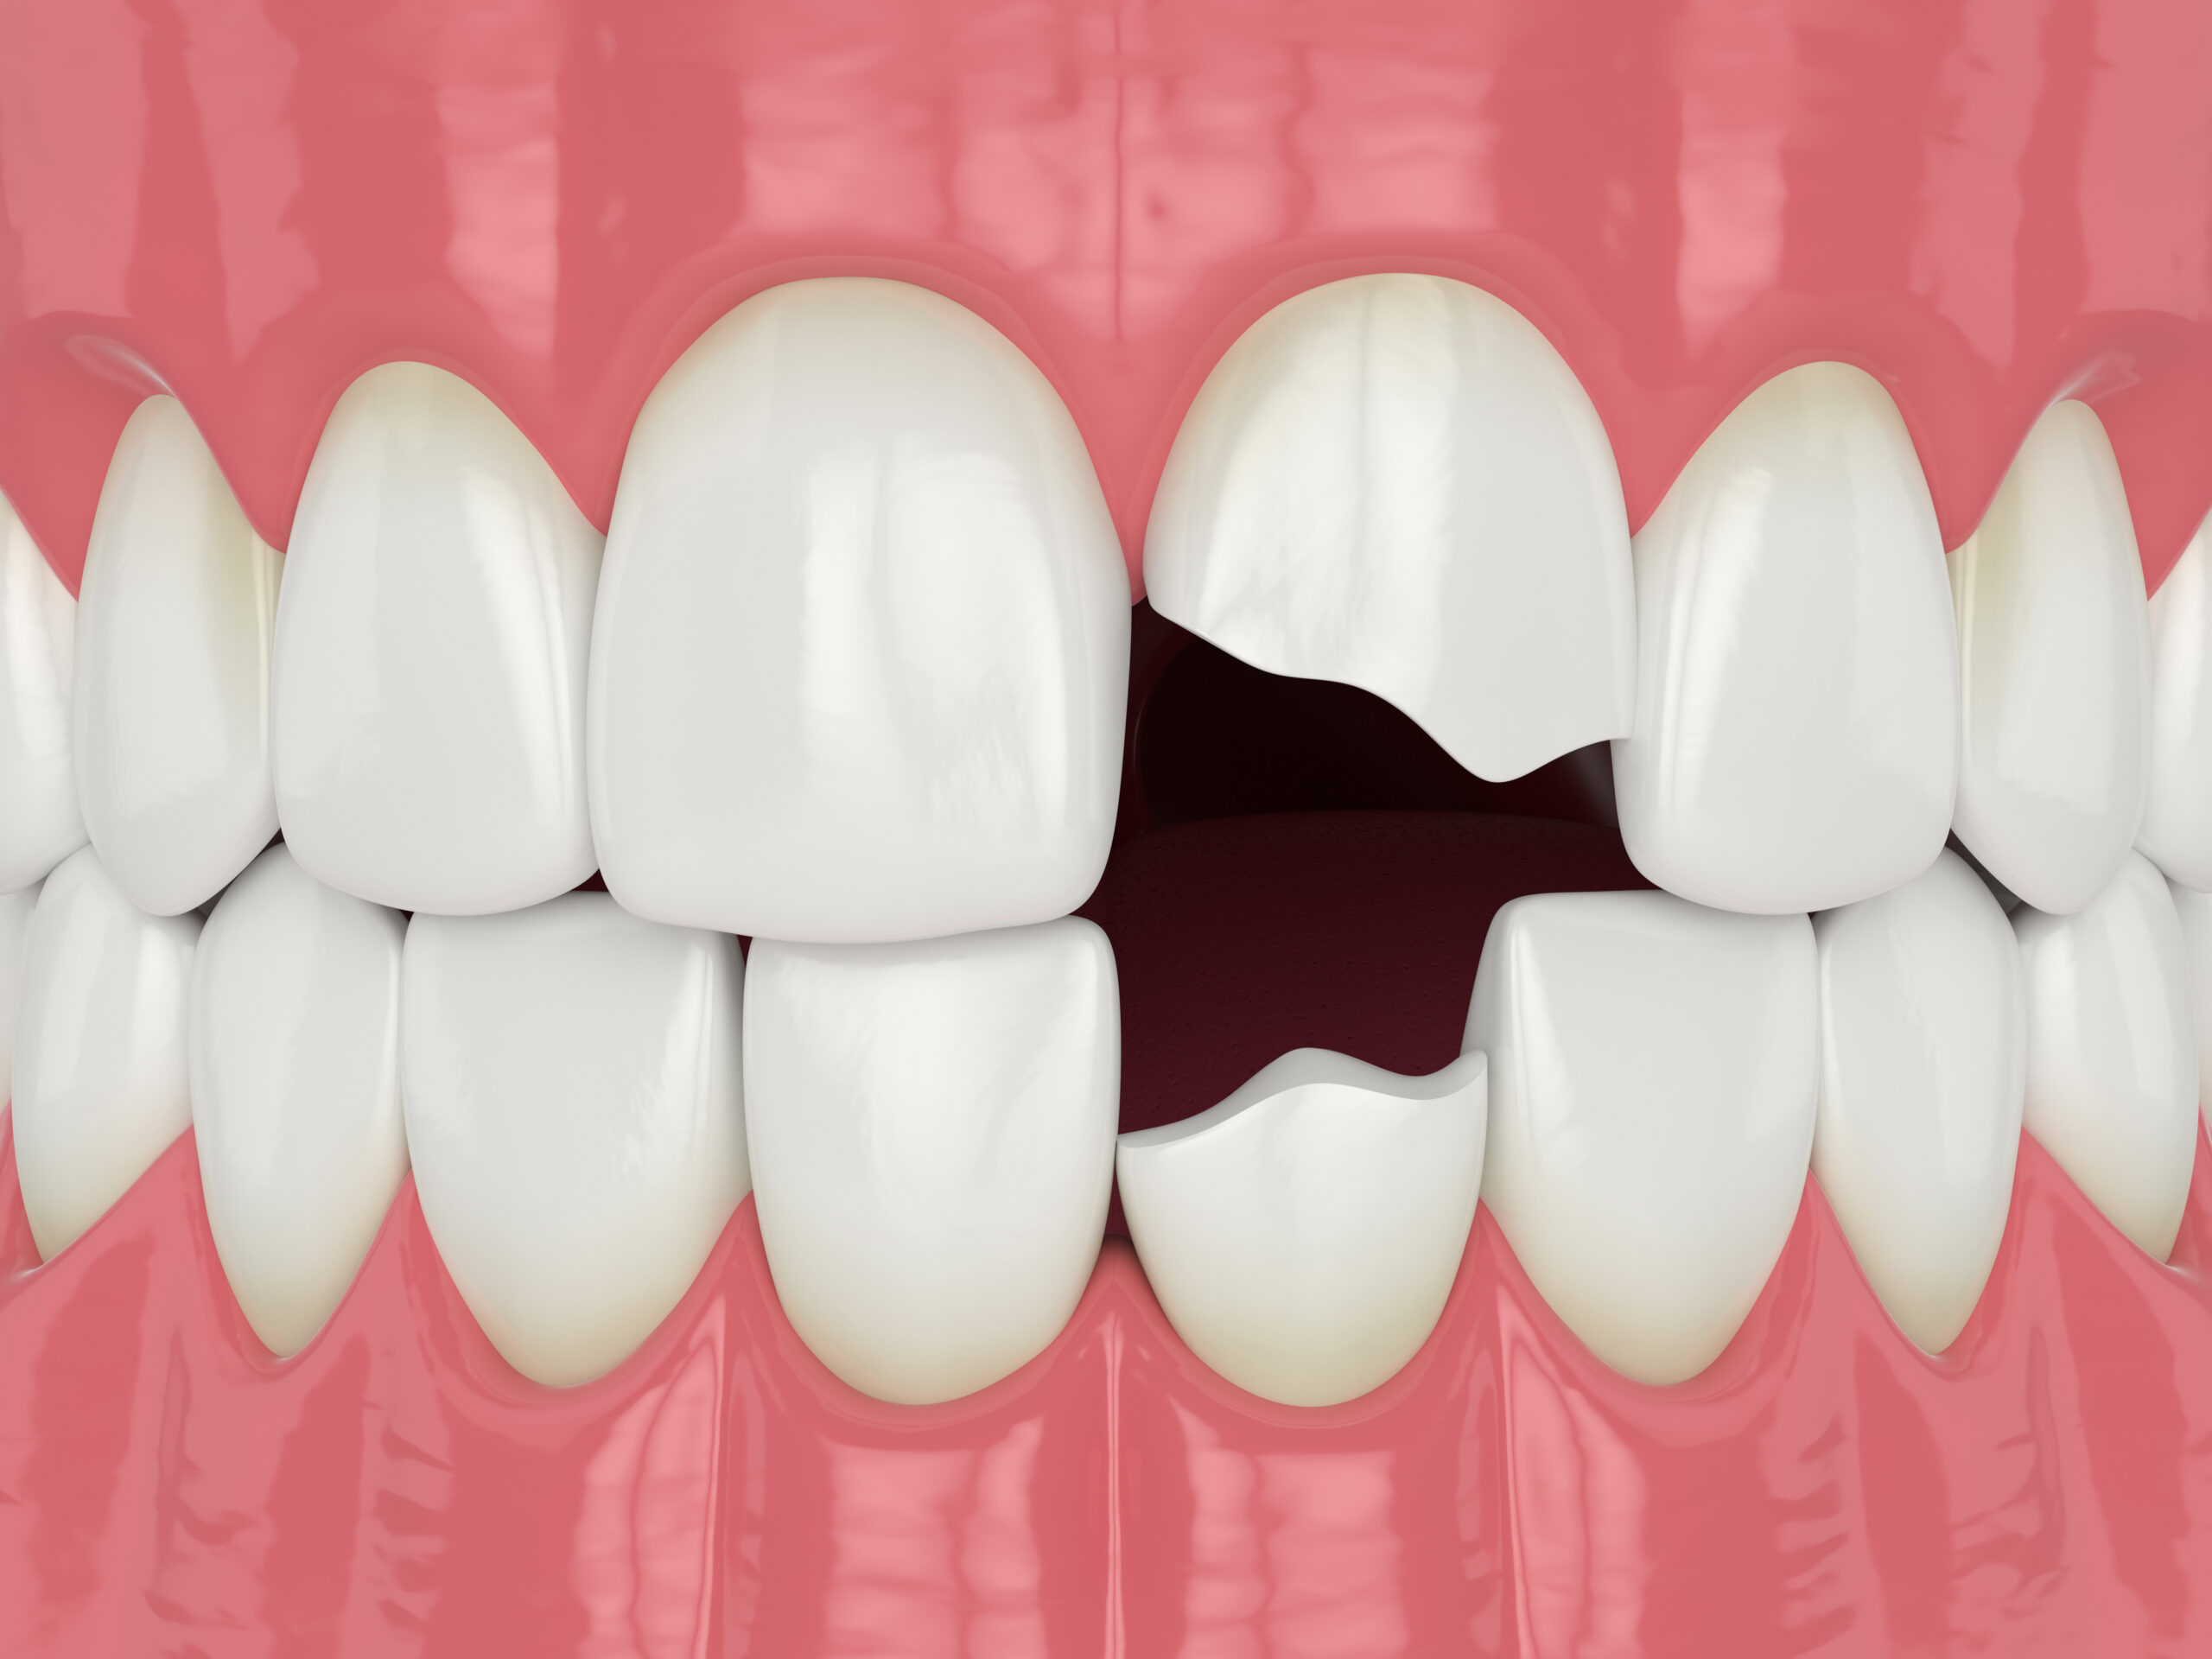 7 Best Options to Fix a Broken Tooth - Dental Direkt